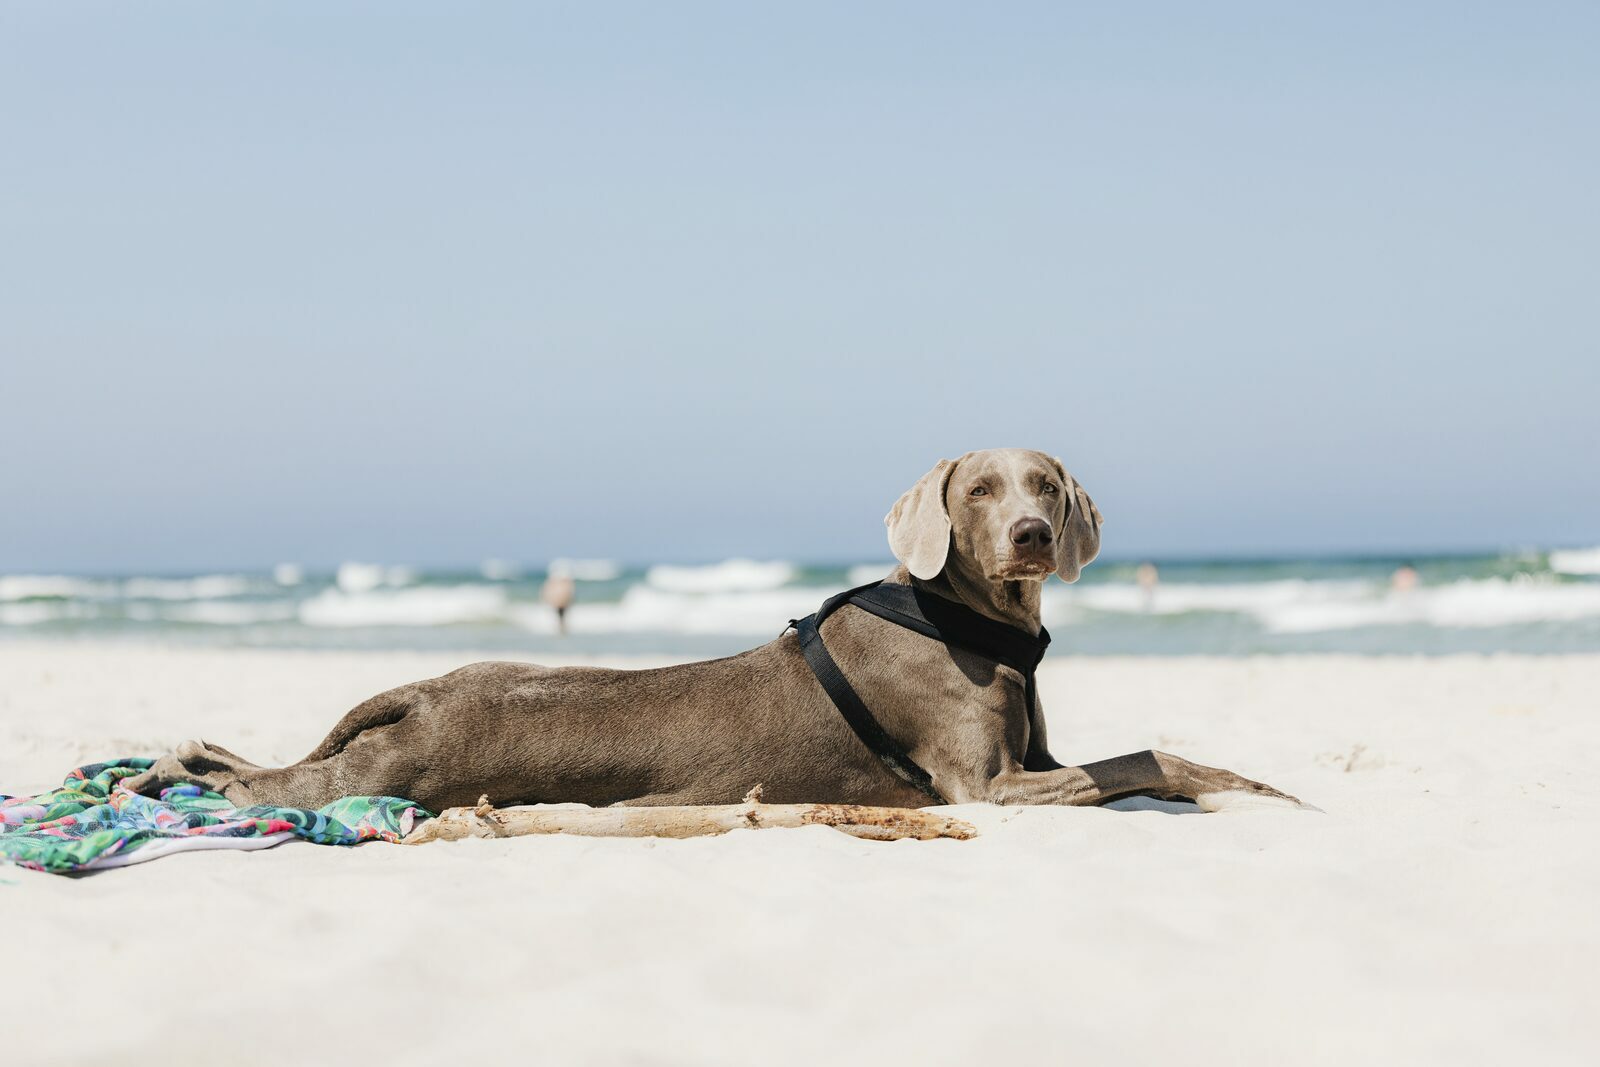 kwaliteit Bacteriën toxiciteit Vakantie met uw hond aan zee | Ouddorp Connection